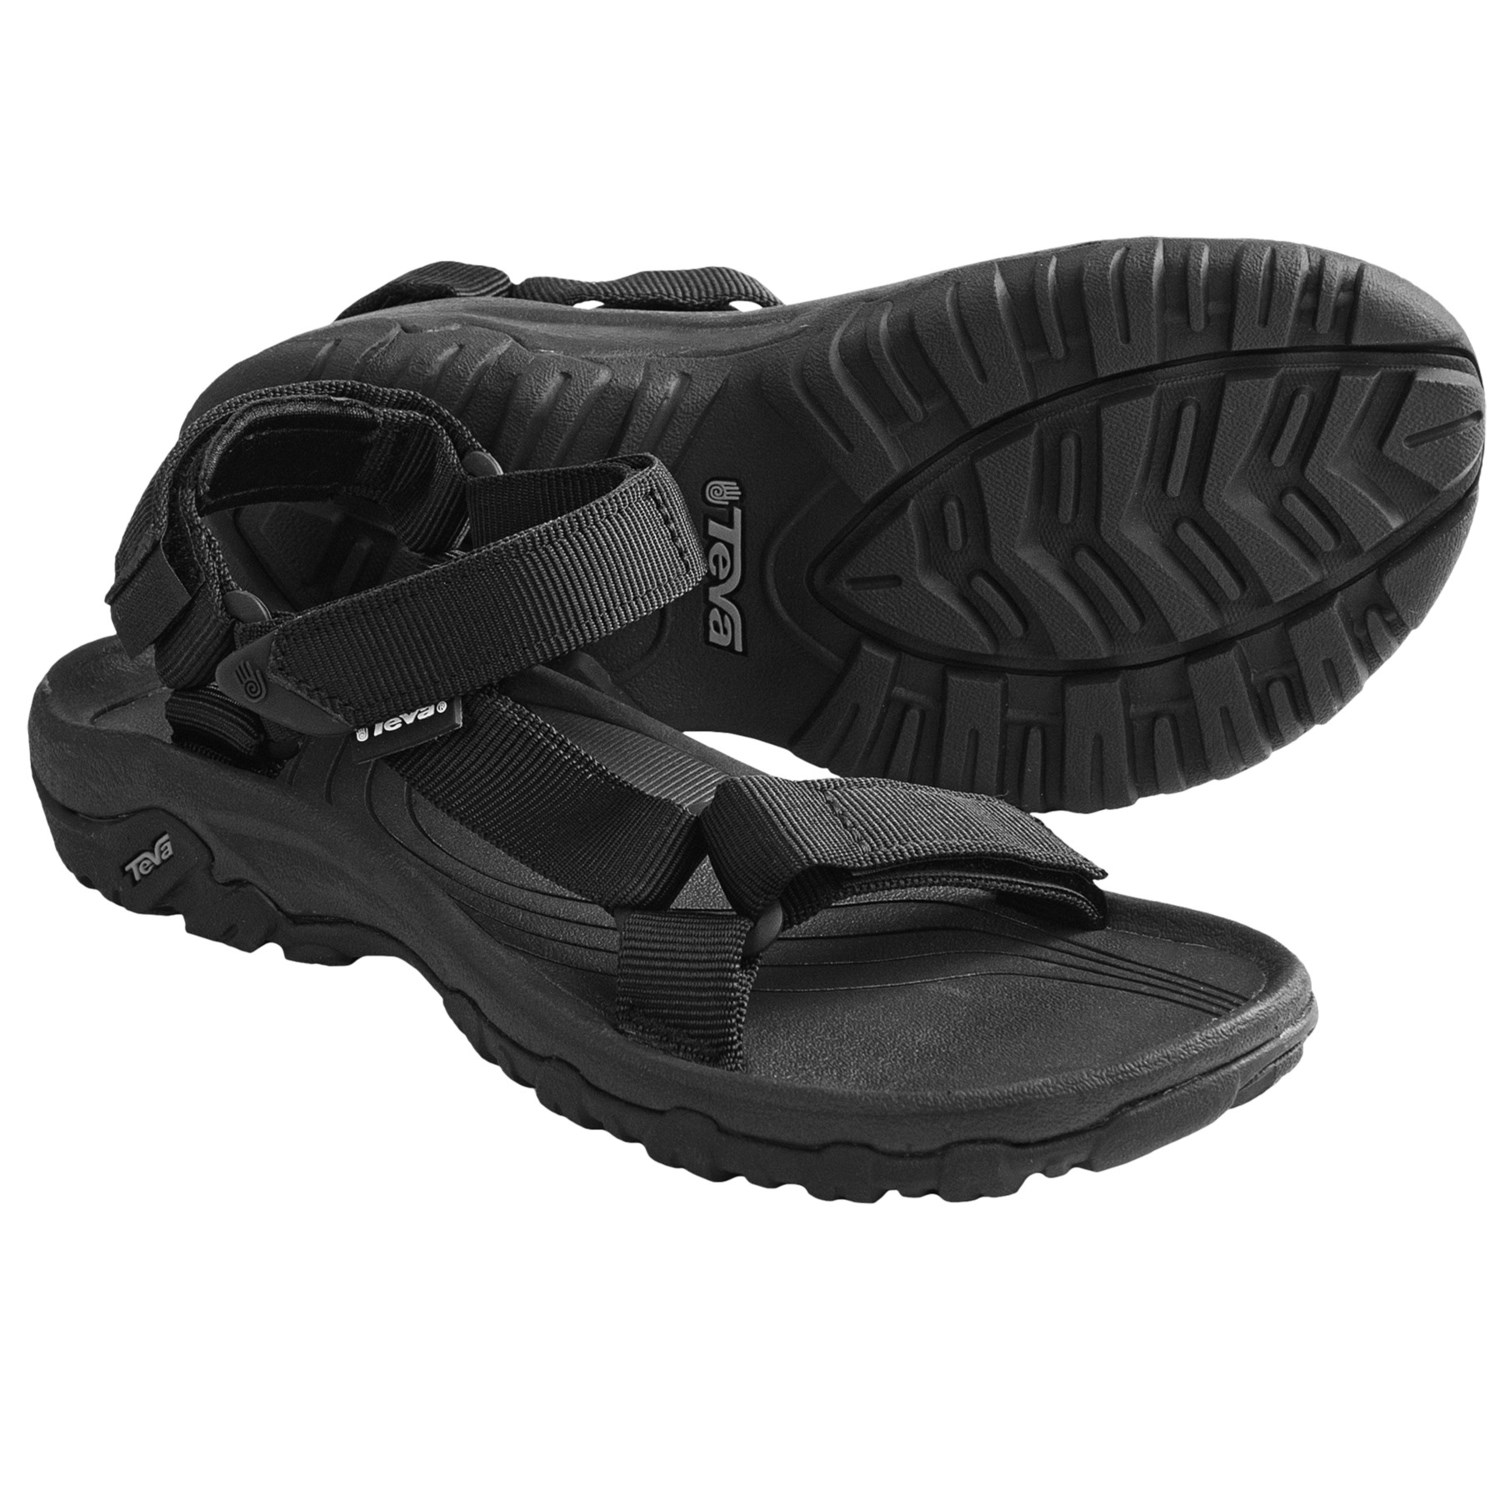 Teva Hurricane XLT Sport Sandals (For Women) - Save 33%